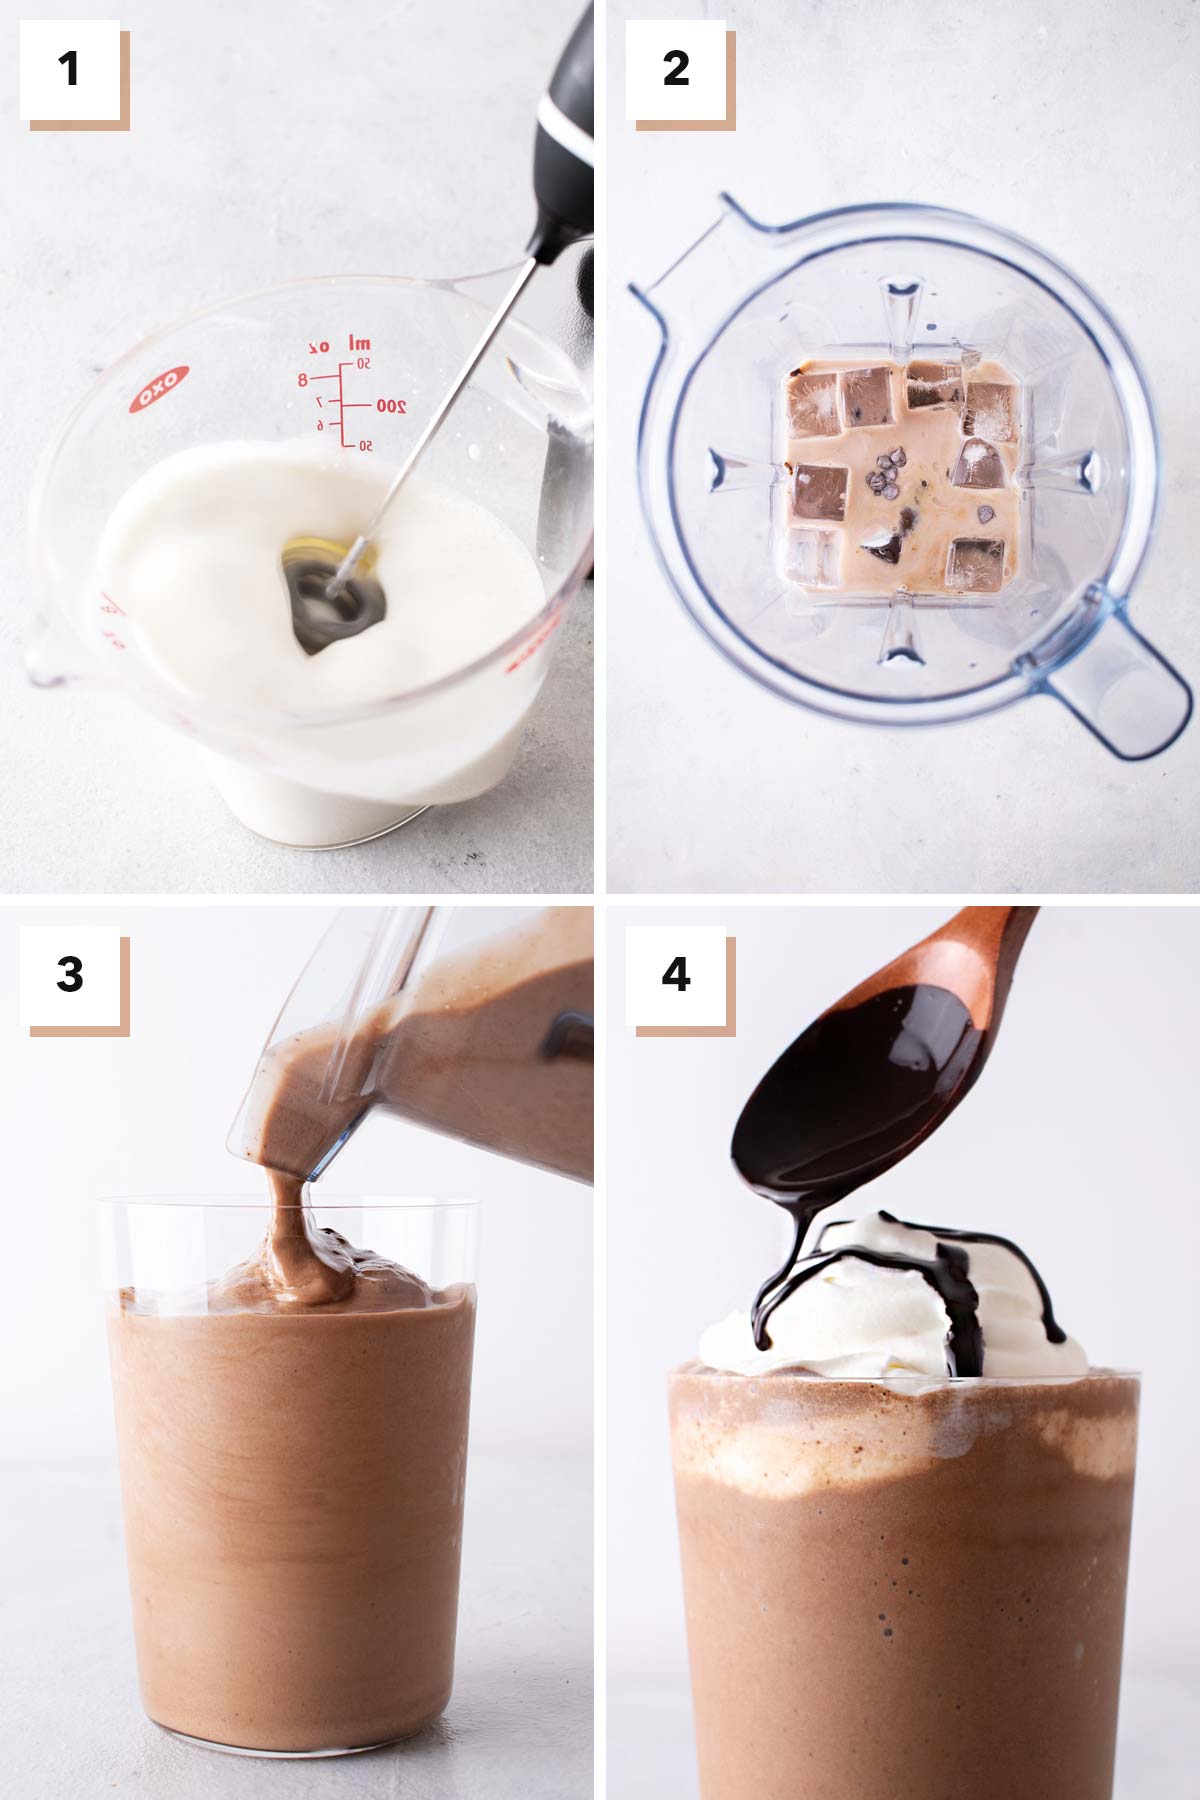 Vier fotocollage met stappen om een Java Chip Frappuccino te maken.